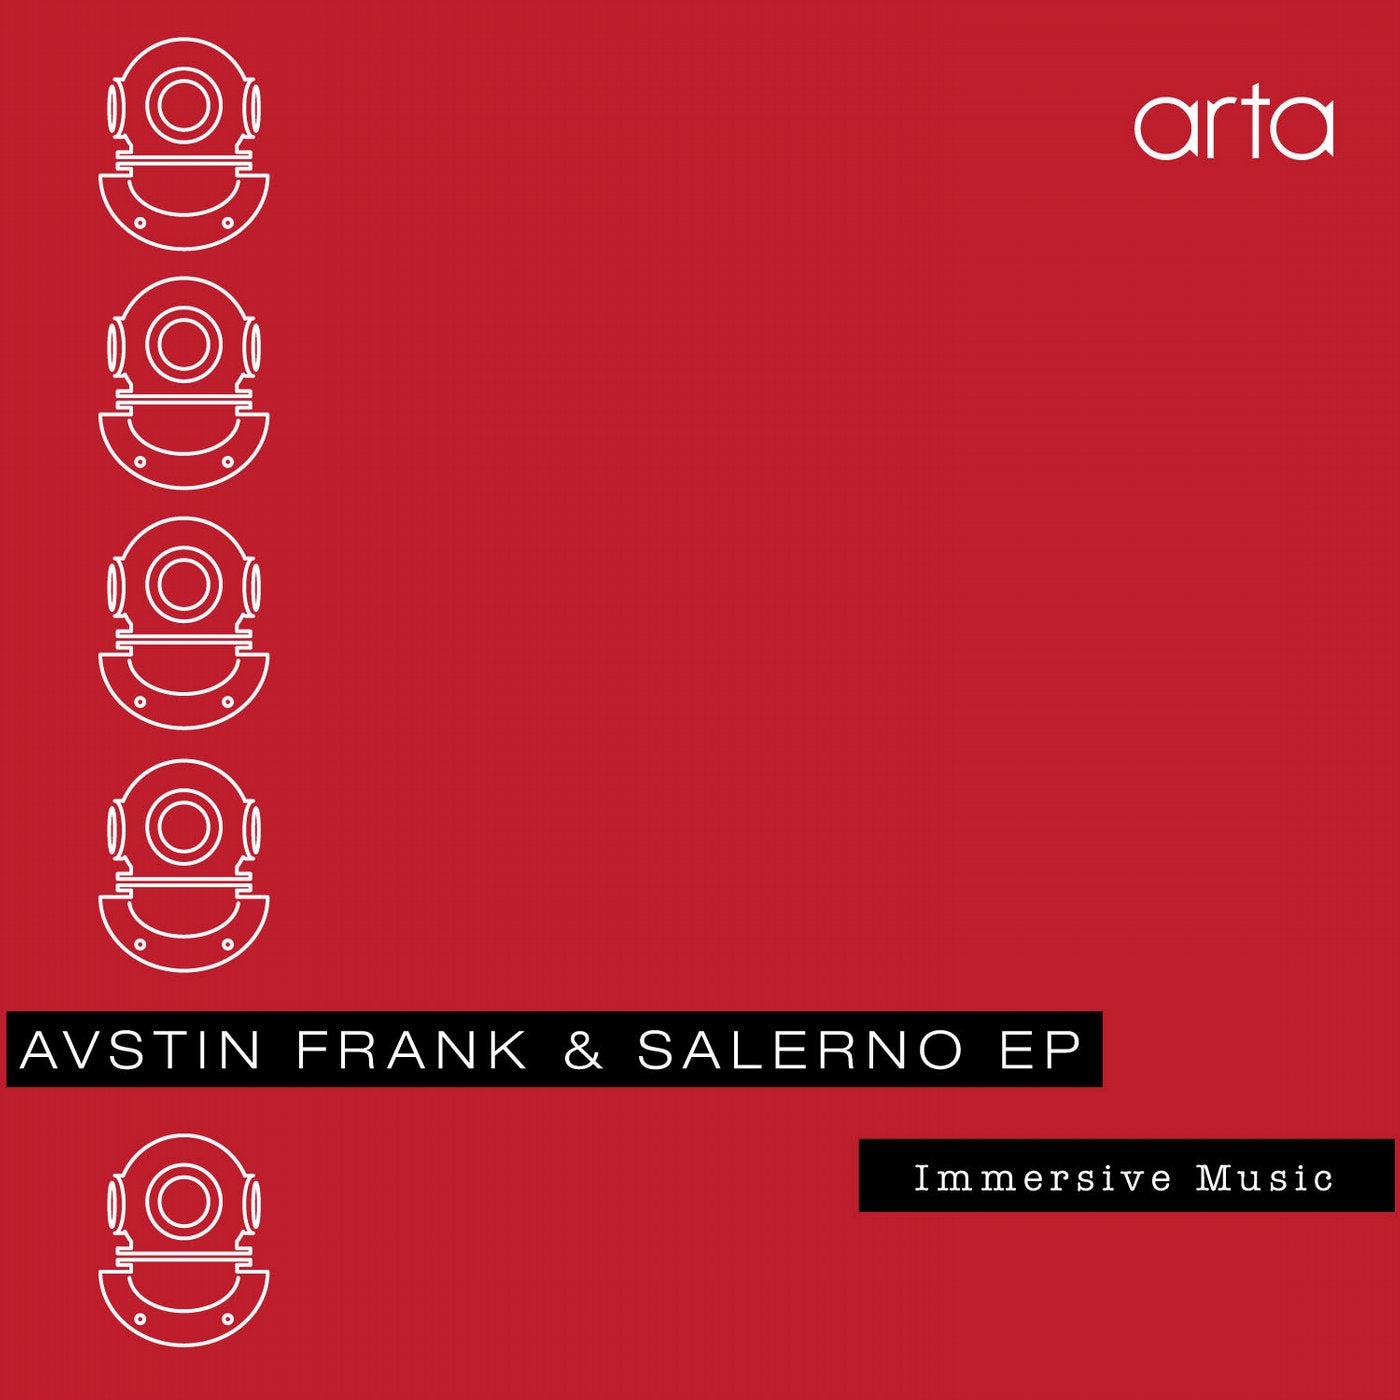 Avstin Frank & Salerno EP